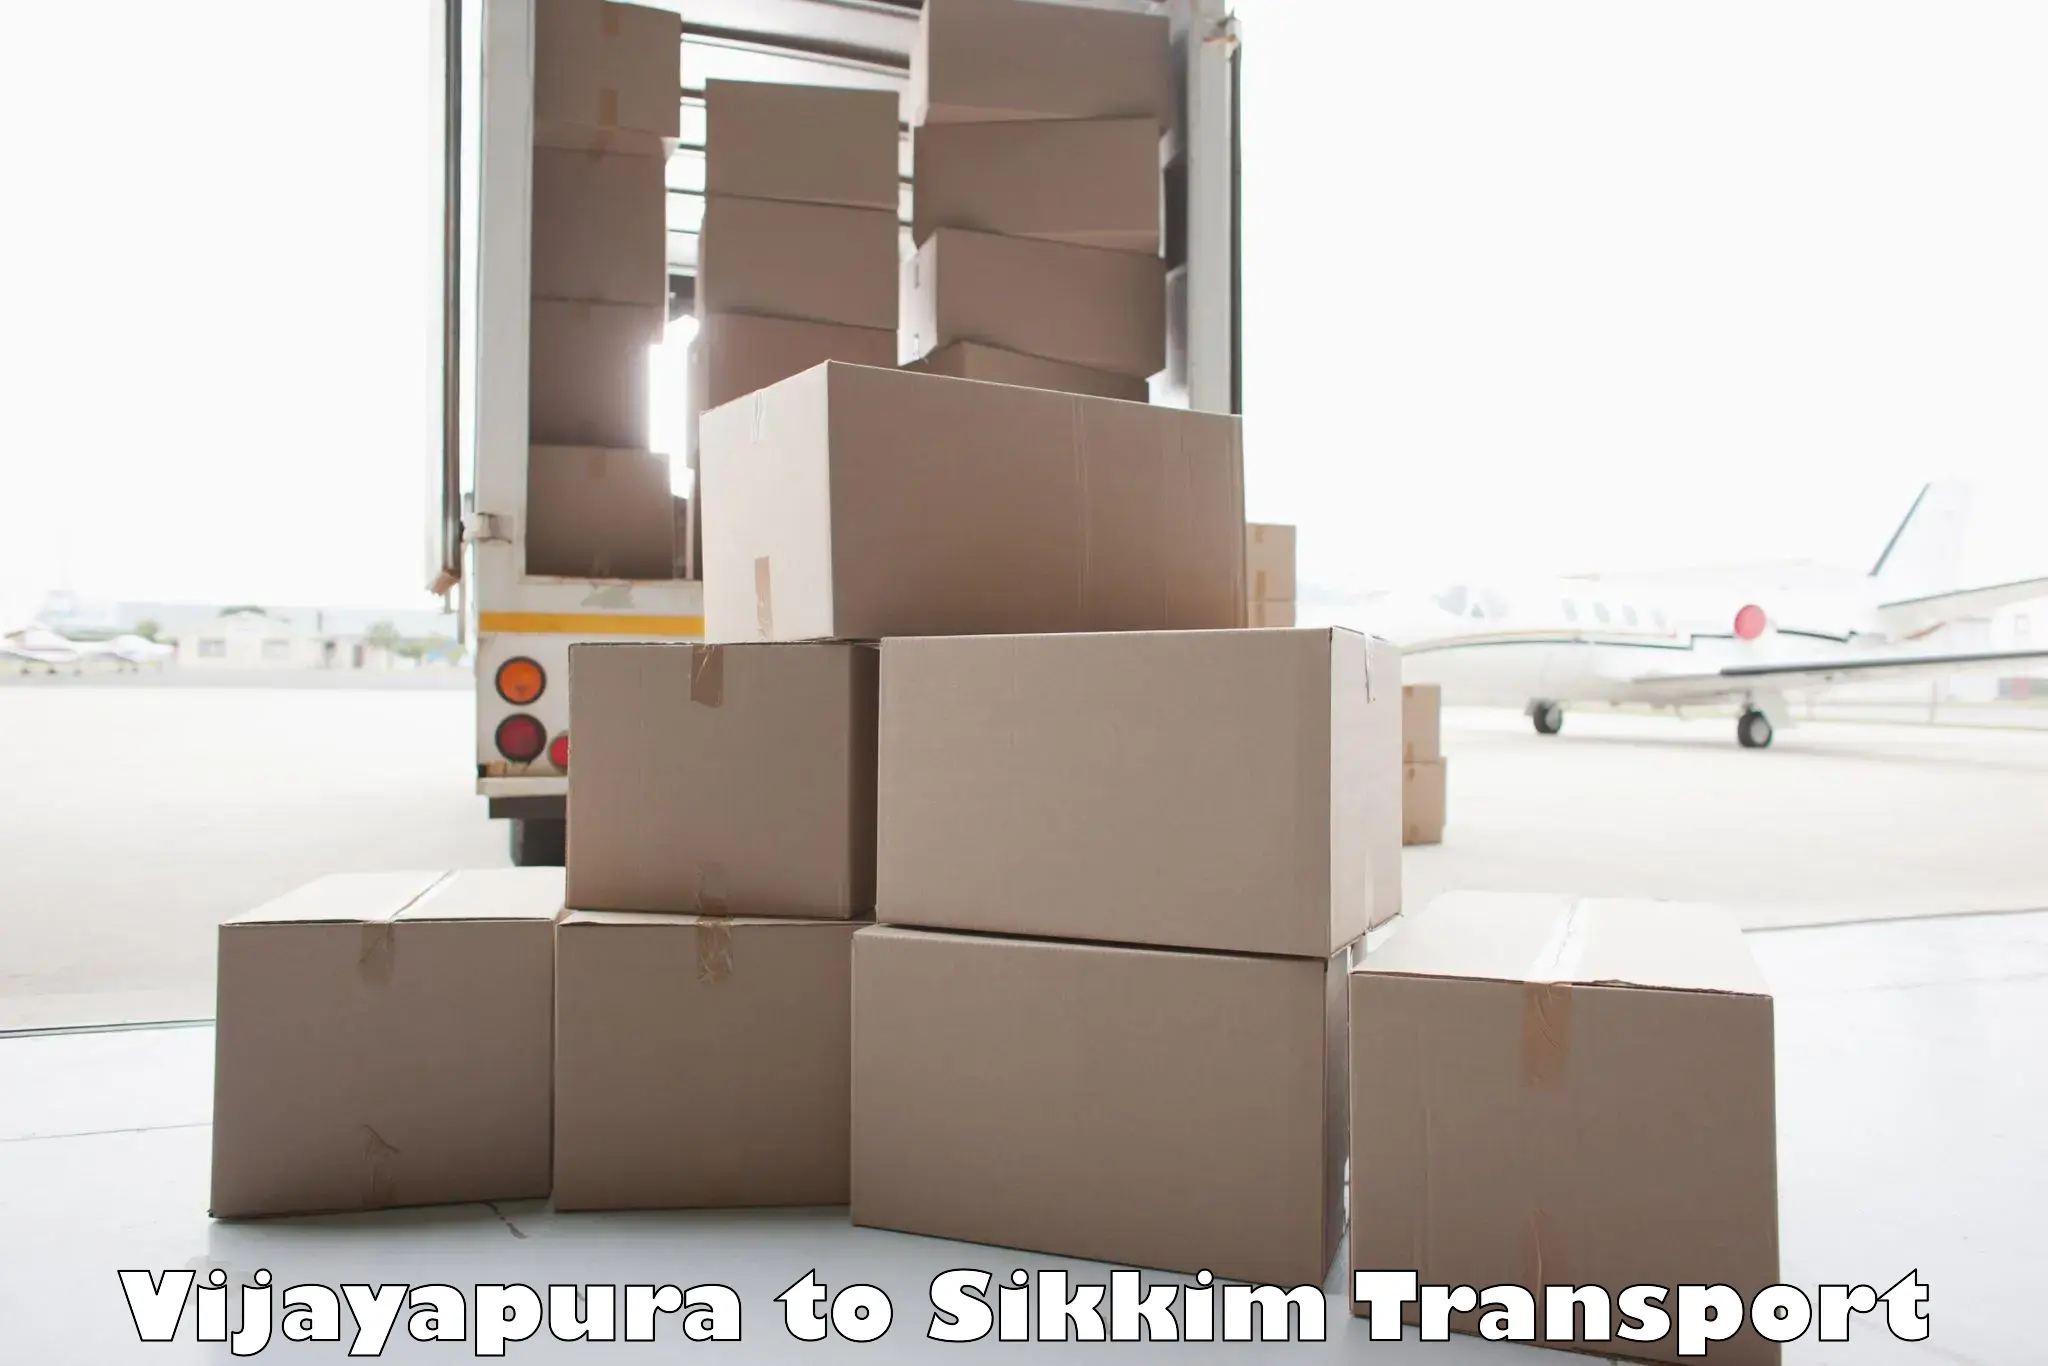 Commercial transport service Vijayapura to Pelling